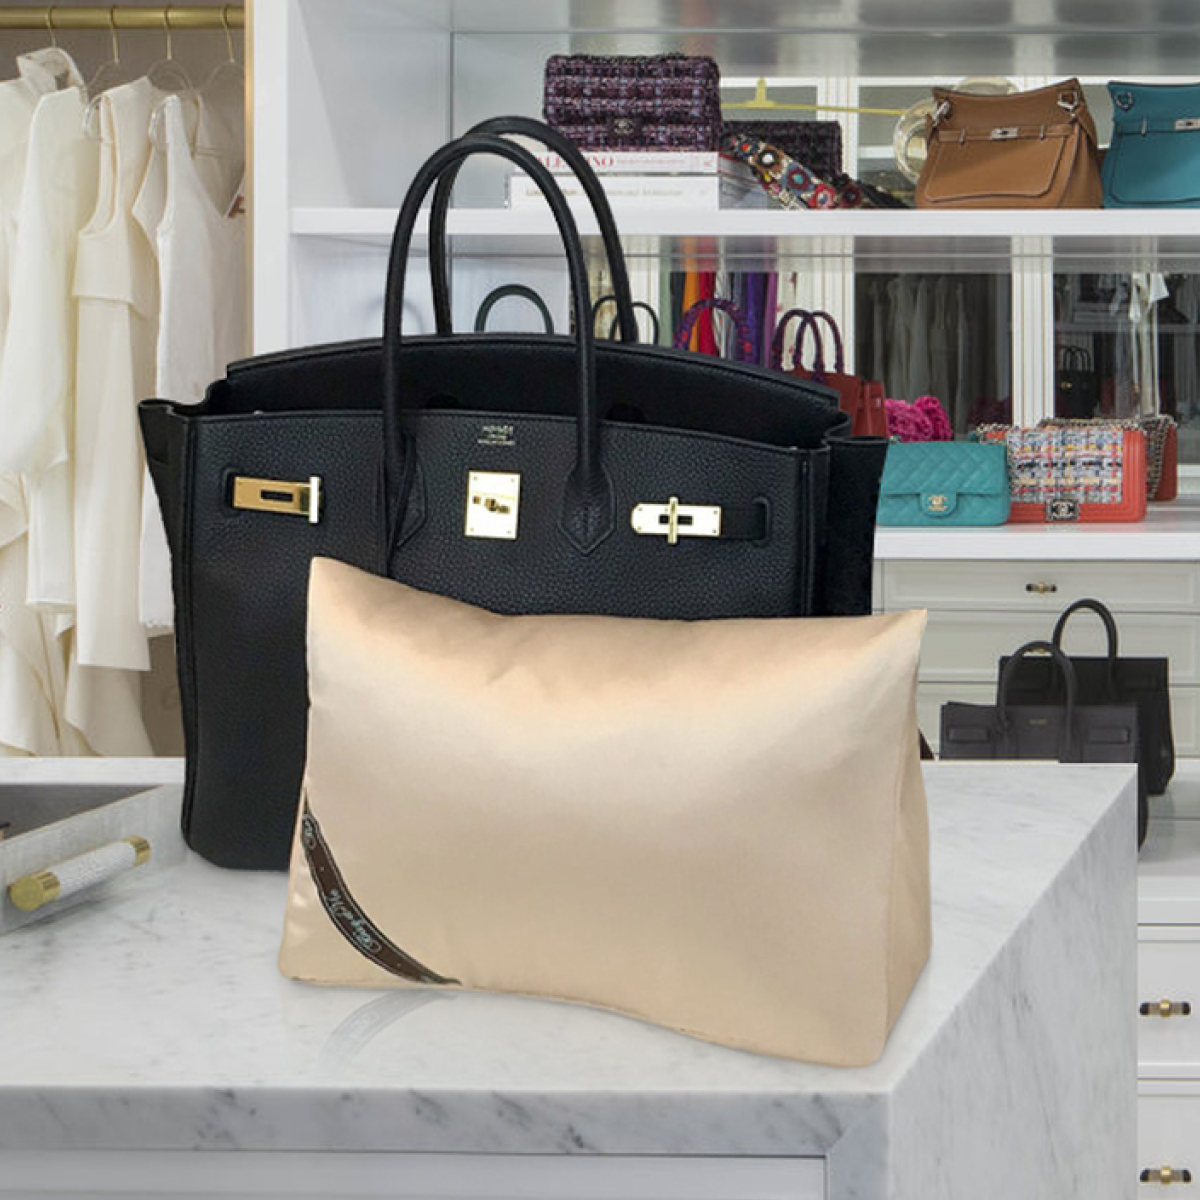 Purse Pillow for Hermes Birkin Bag Models, Bag Shaper Pillow